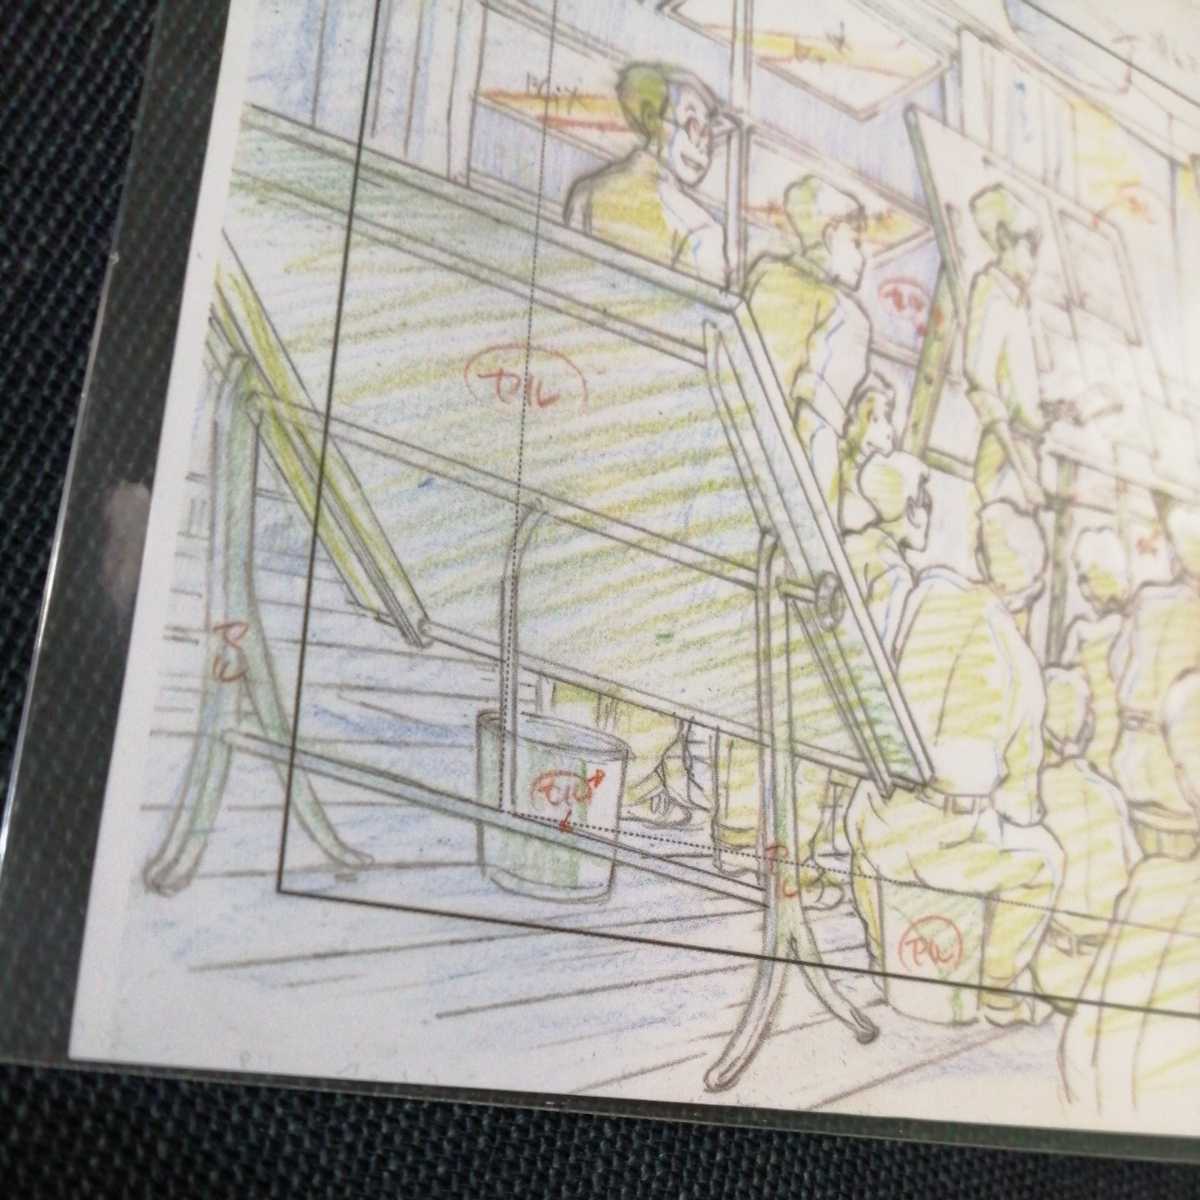  Studio Ghibli способ ... расположение порез . осмотр ) Ghibli открытка постер исходная картина цифровая картинка расположение выставка Miyazaki . высота поле .b